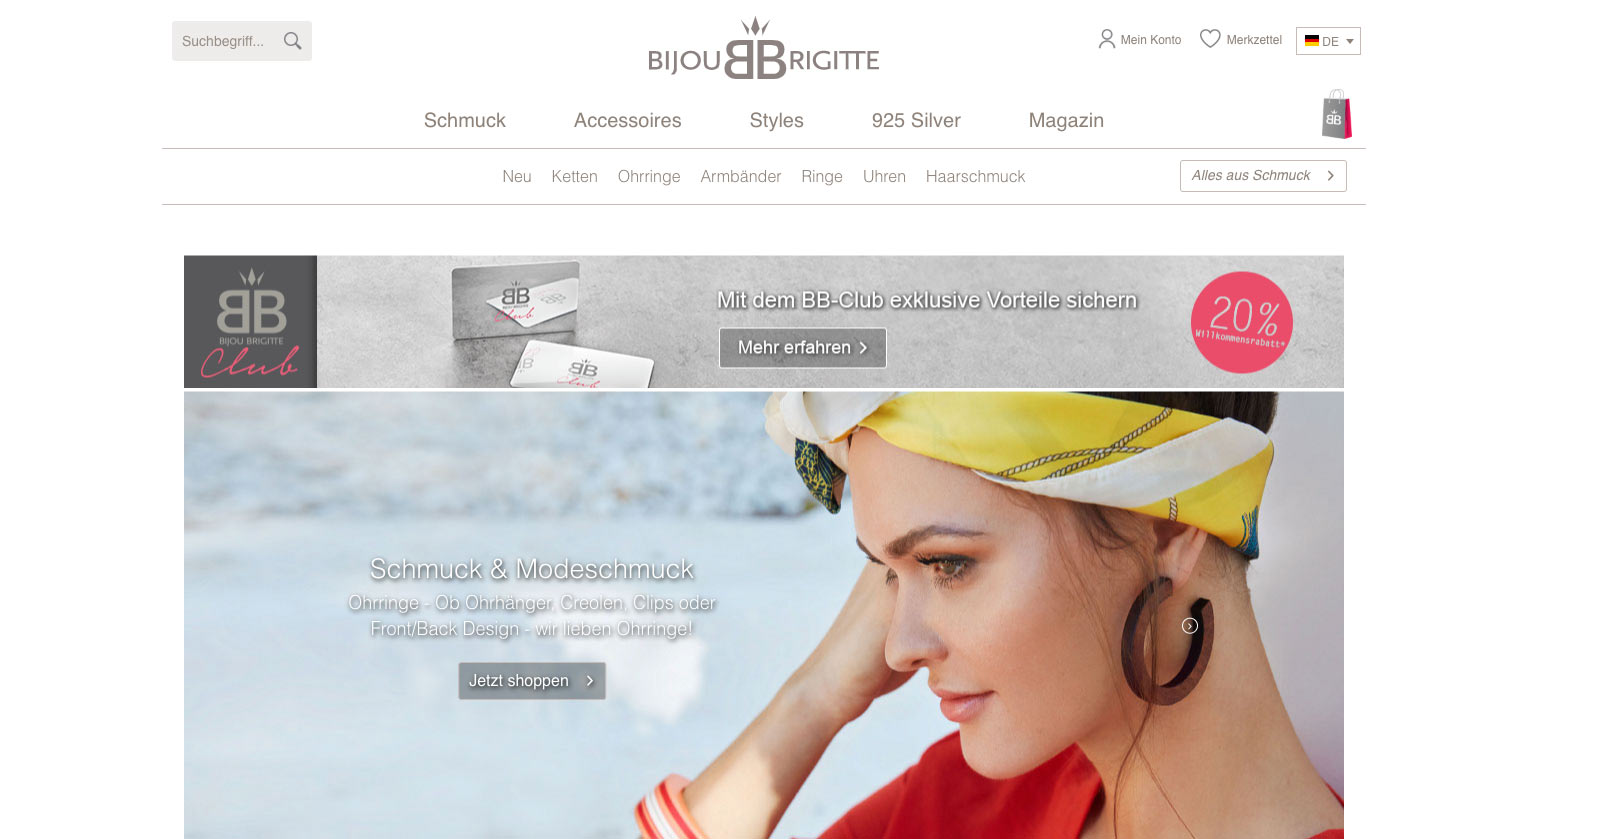 Das Modeschmuck-Unternehmen Bijou Brigitte freut sich über ein Umsatzzuwachs im 1. Halbjahr 2019.